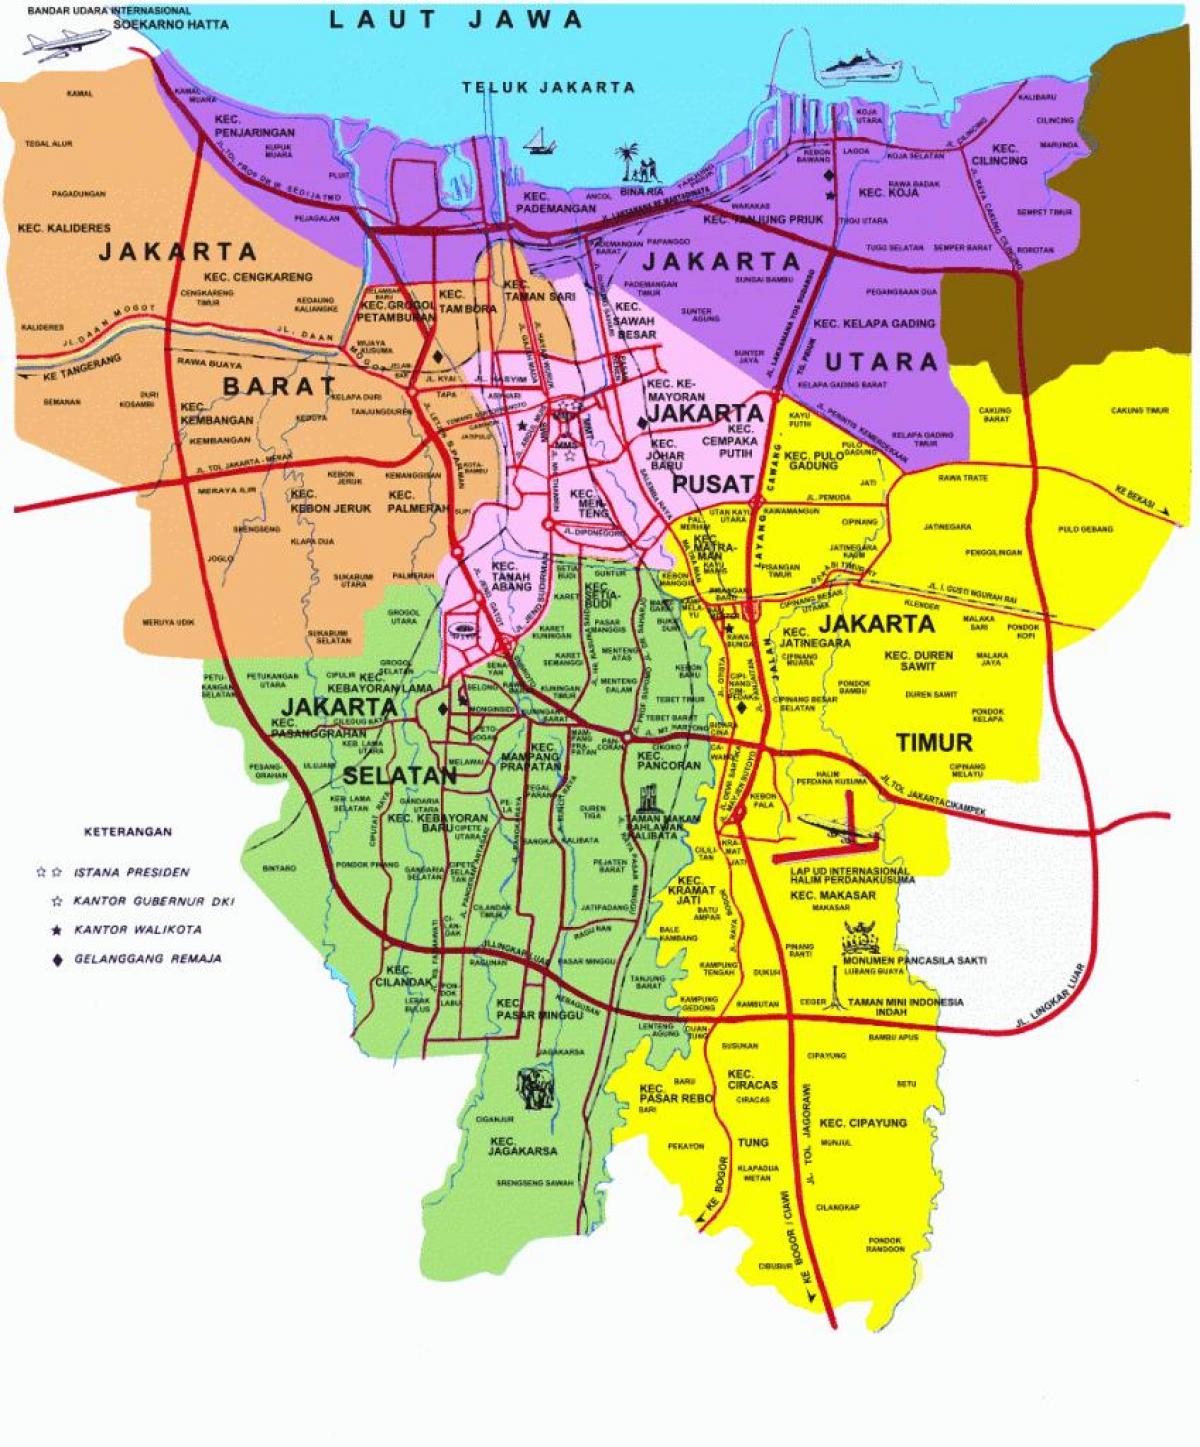 kort over Jakarta attraktioner